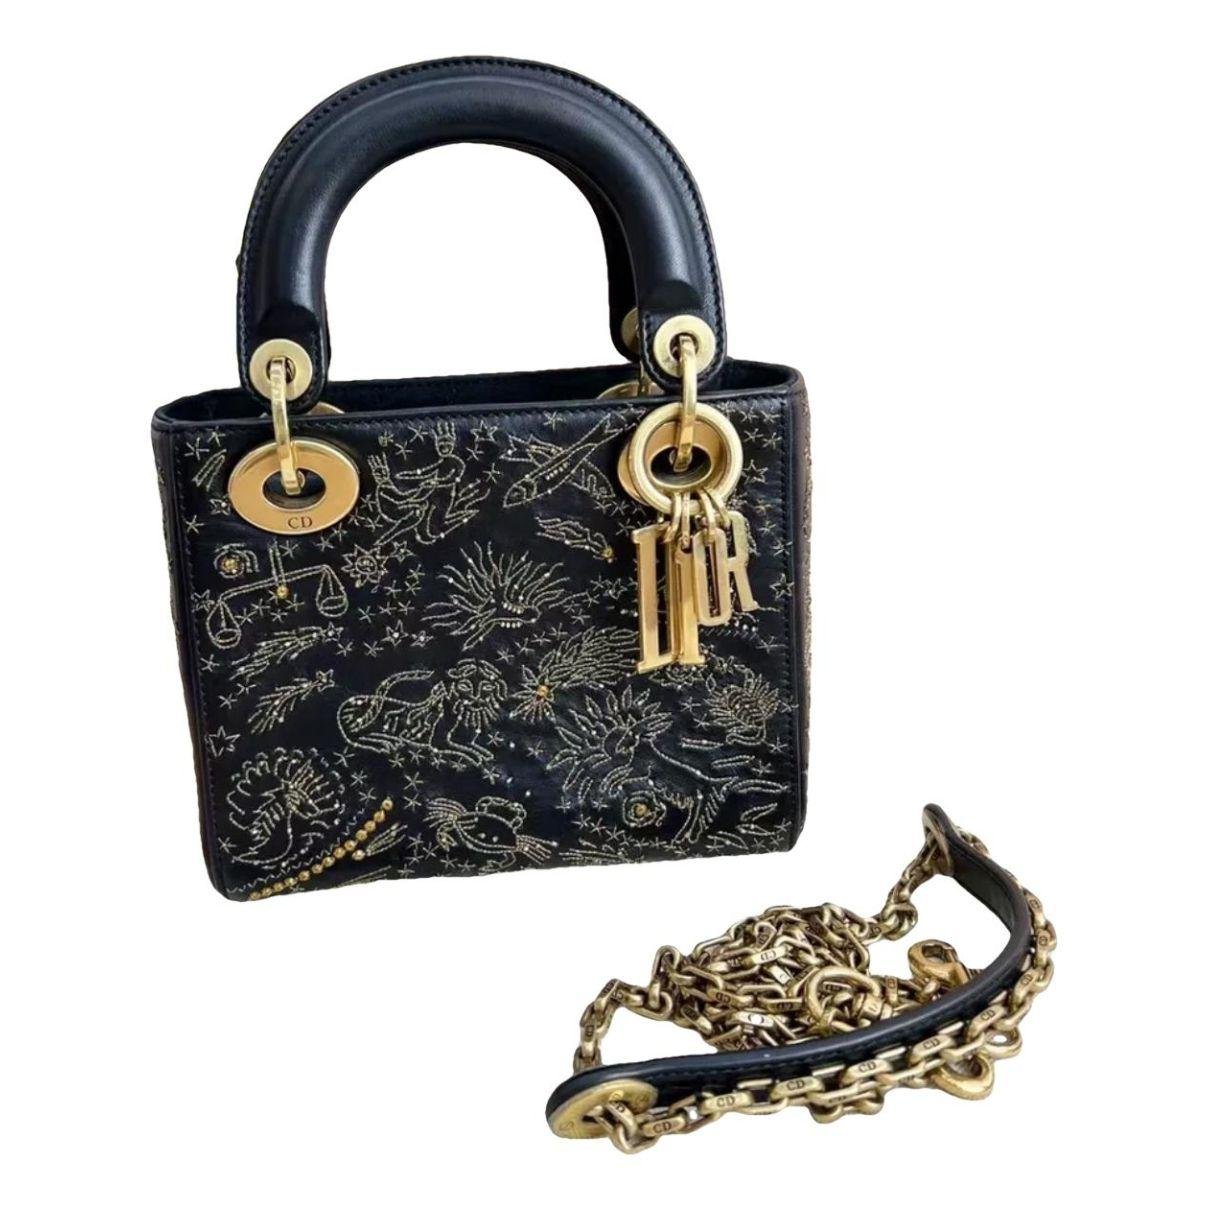 Lady Dior leather handbag by DIOR